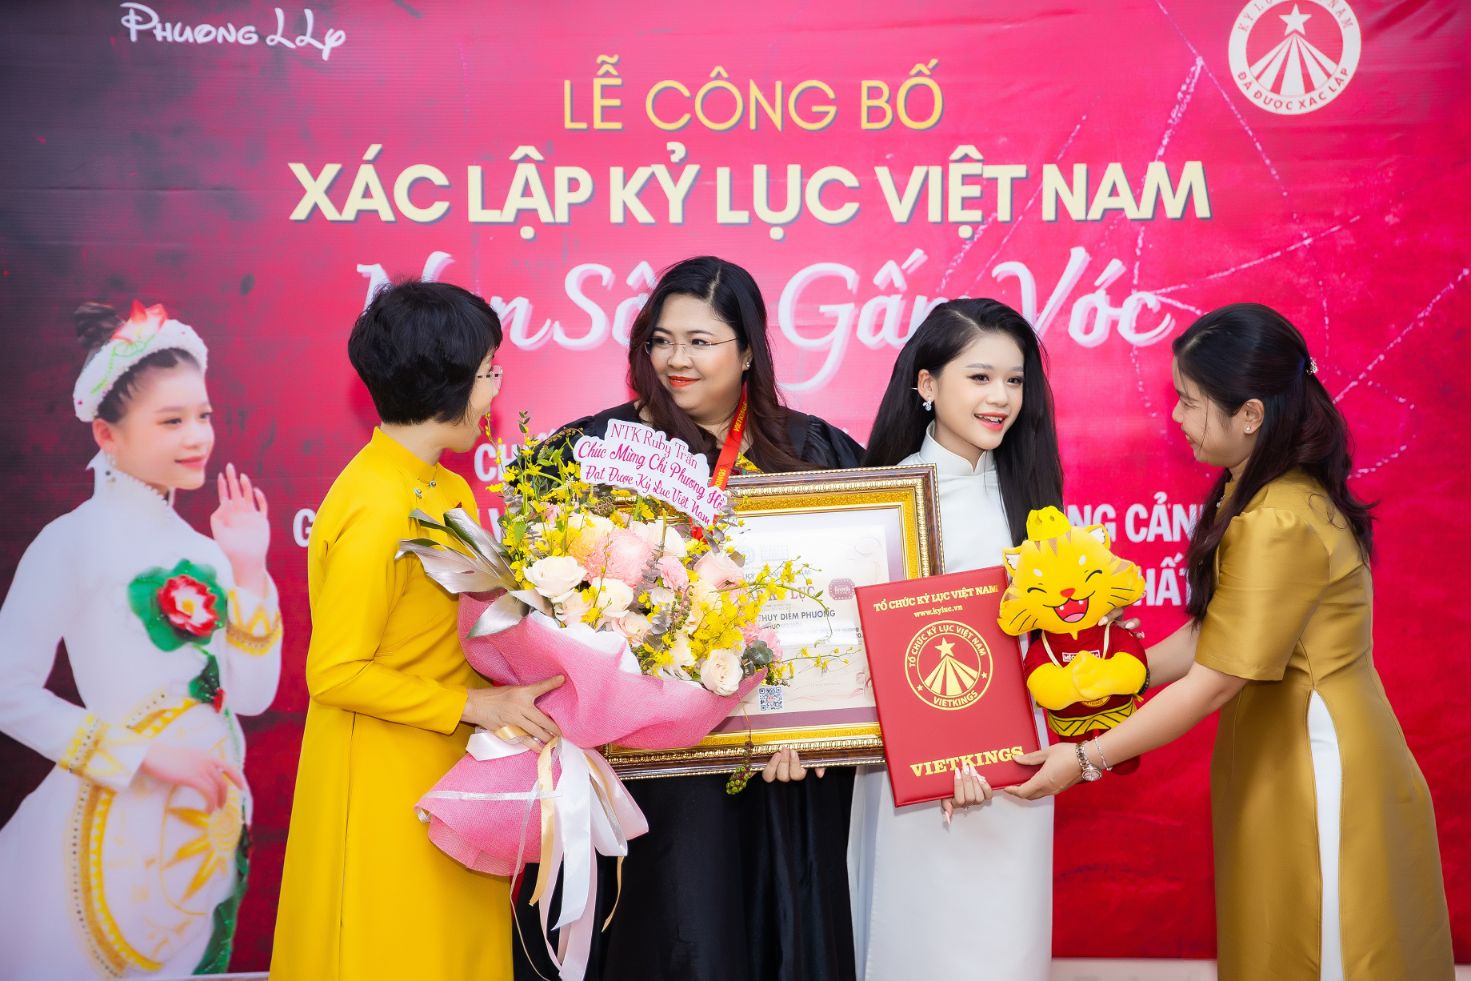 ky luc viet nam 2 NTK Phương Hồ lập kỷ lục Việt Nam với chiếc áo dài dài 220 m, nặng 250 kg